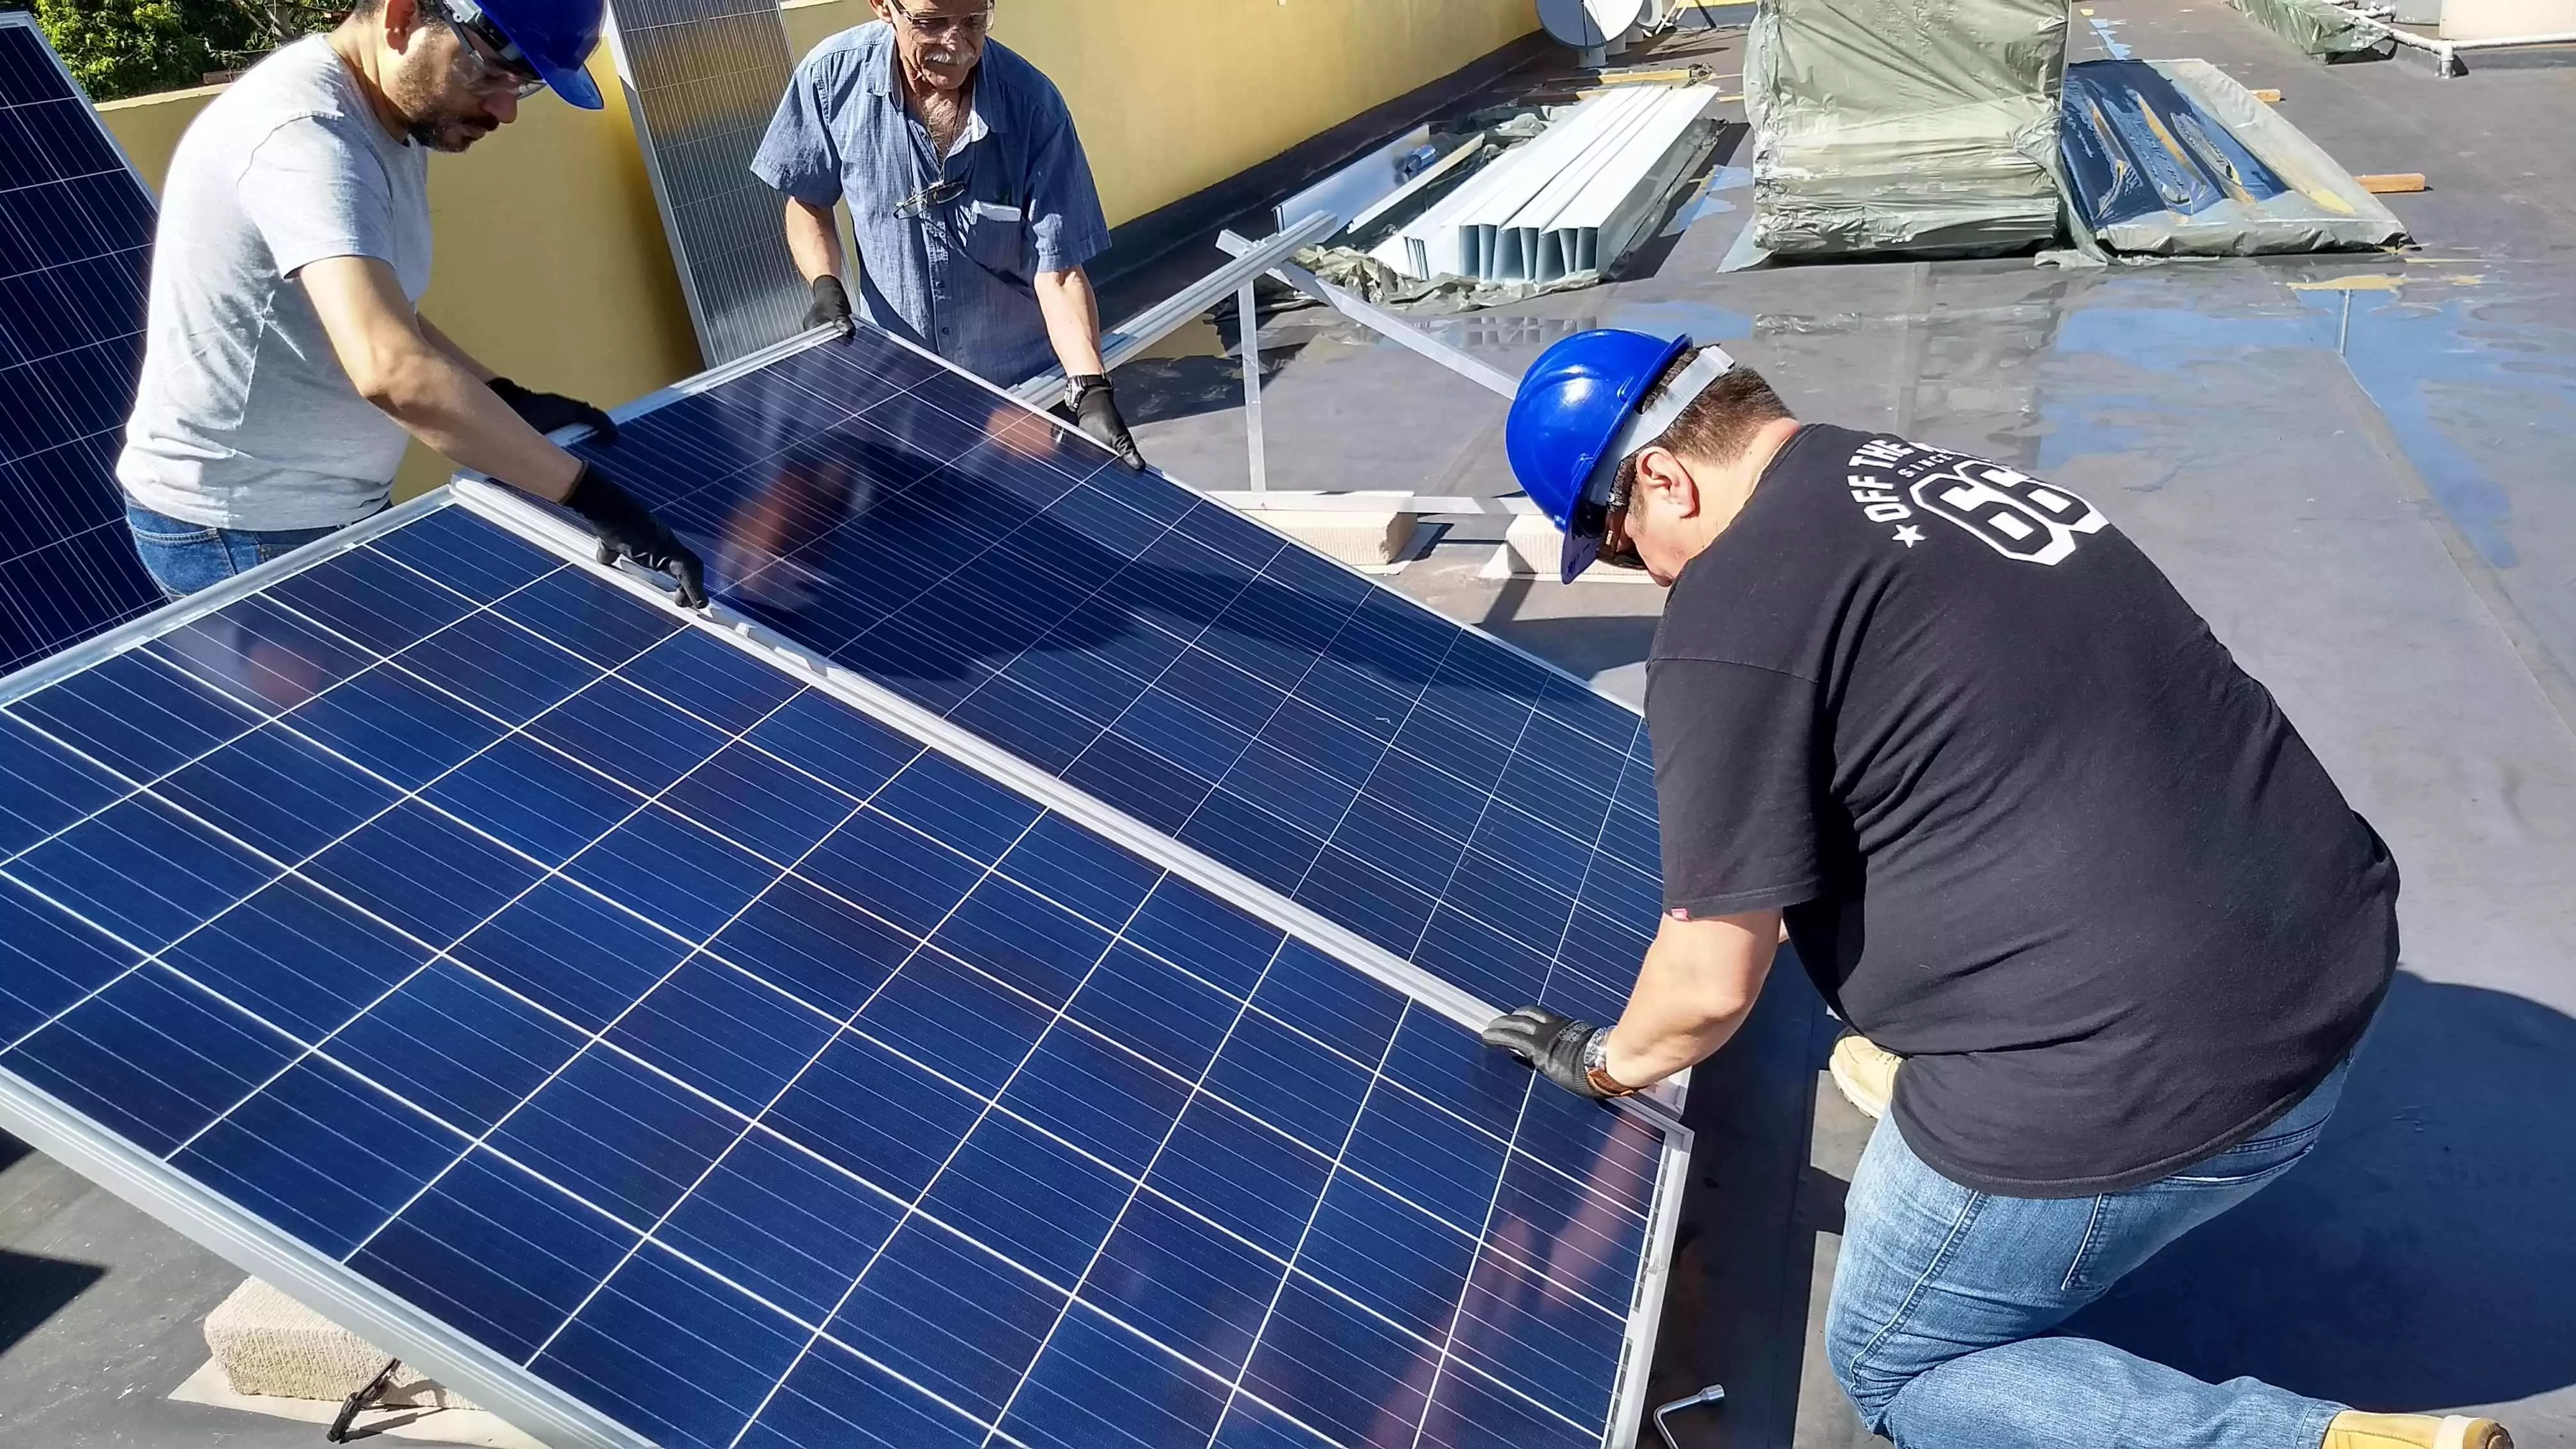 O Melhor treinamento de Energia Solar Fotovoltaica - 2